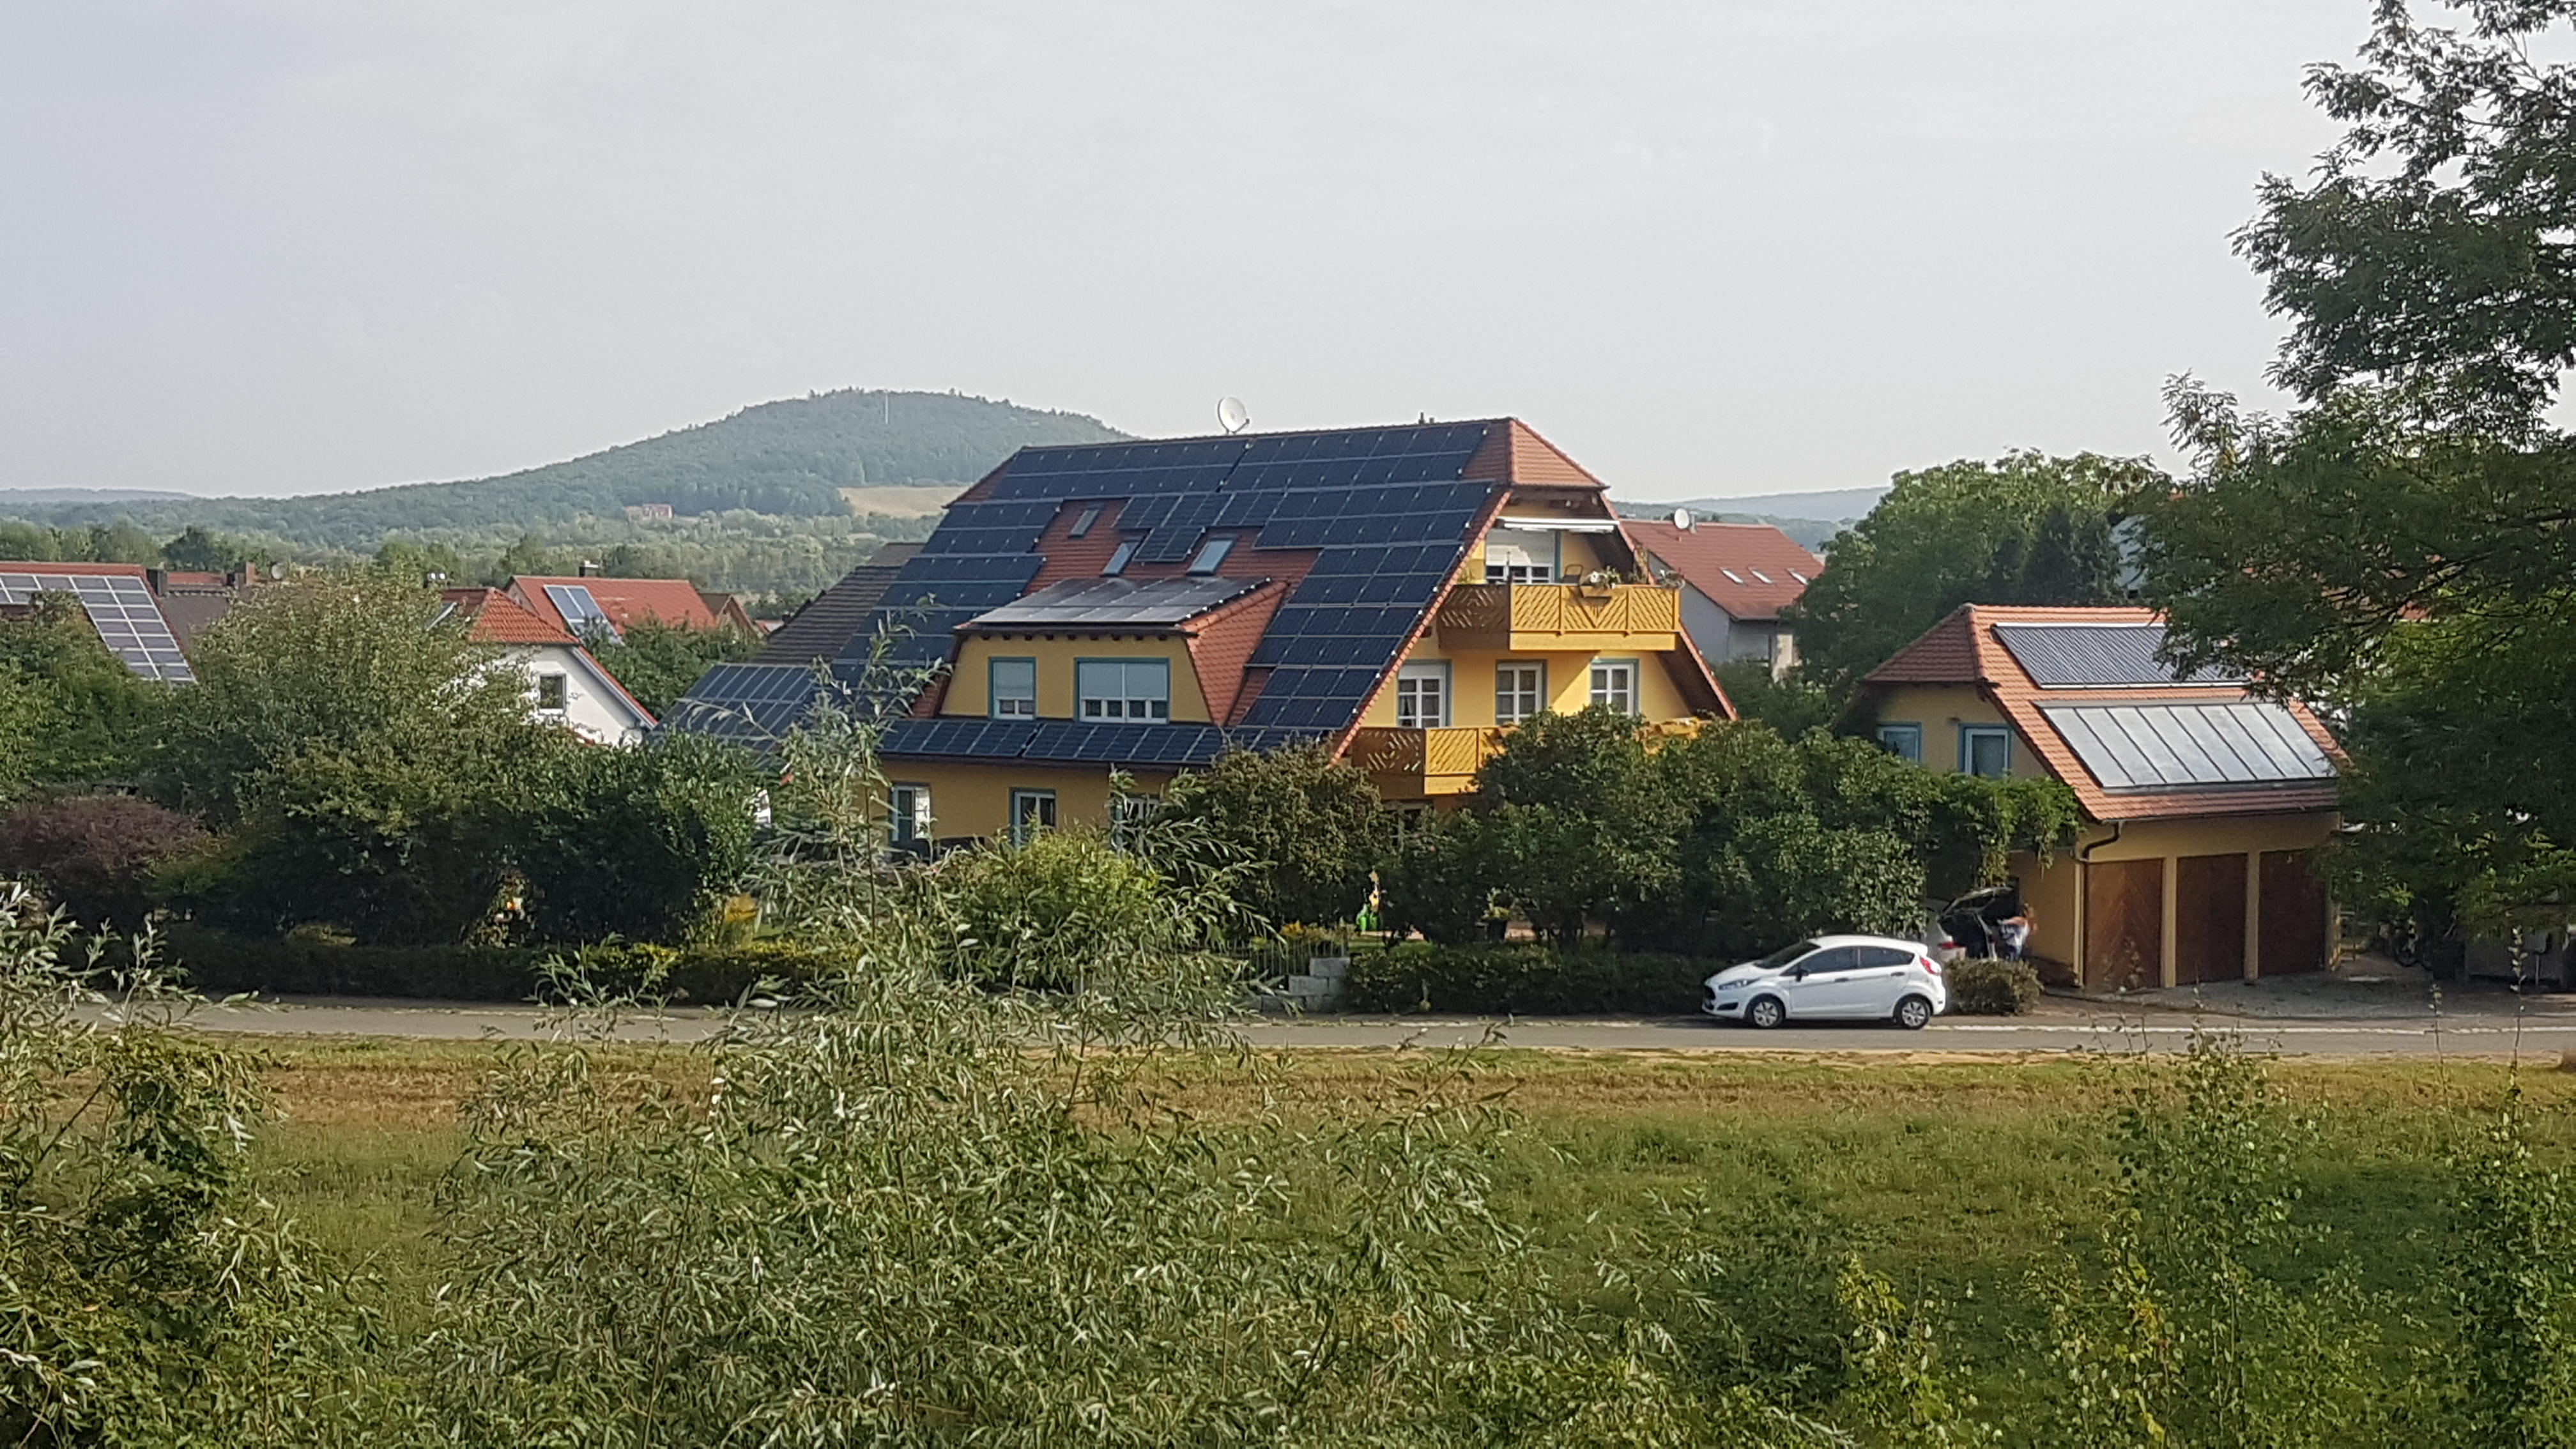 Anwesen Fliederweg 29 in Eggolsheim im Sommer Sdwestansicht